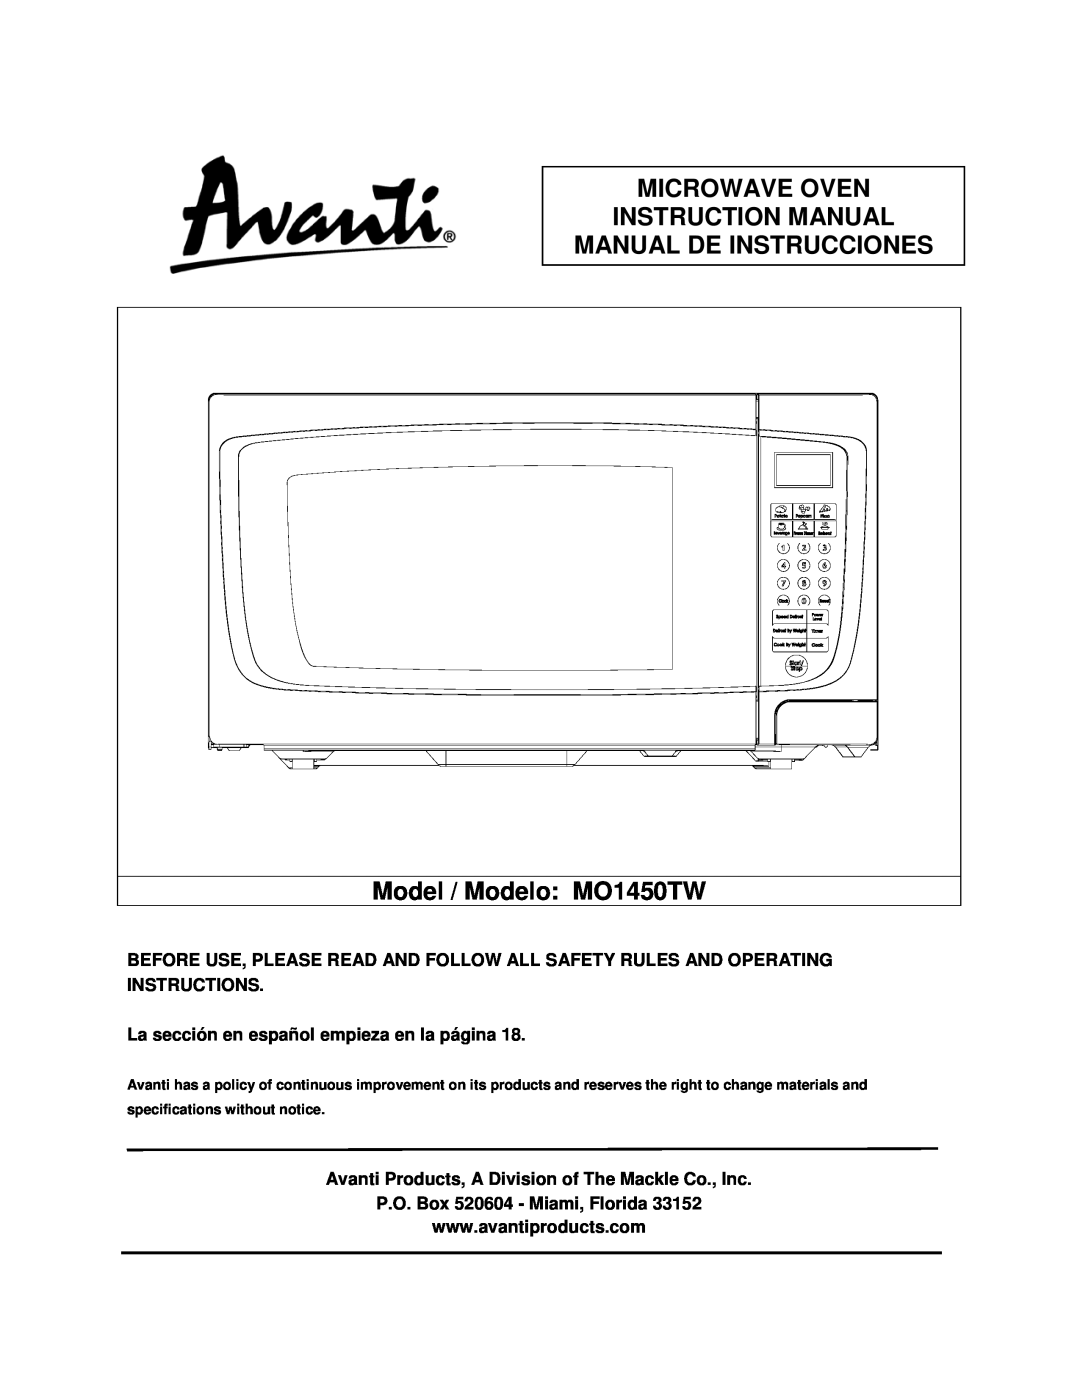 Avanti specifications Manual De Instrucciones, Model / Modelo MO1450TW, La sección en español empieza en la página 